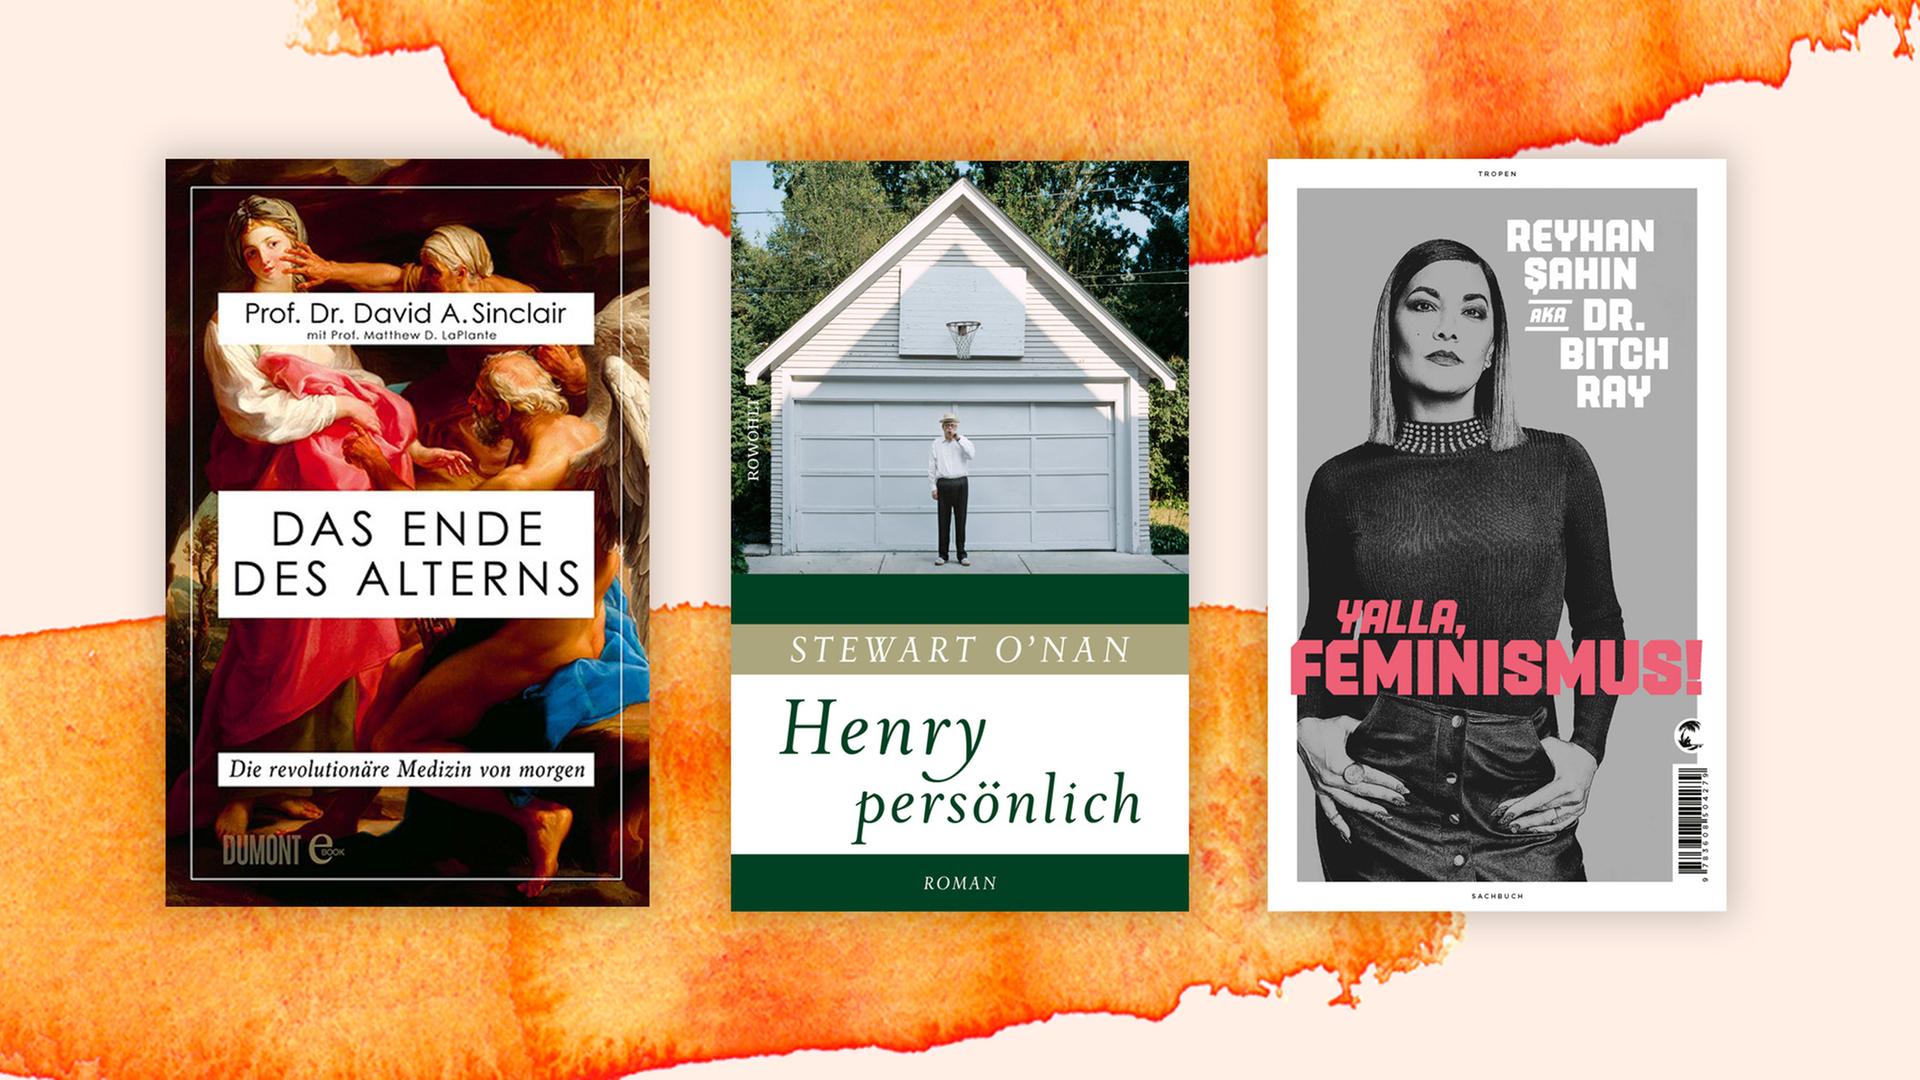 Buchcover zu "Das Ende des Alterns", "Henry persönlich" und "Yalla, Feminismus"